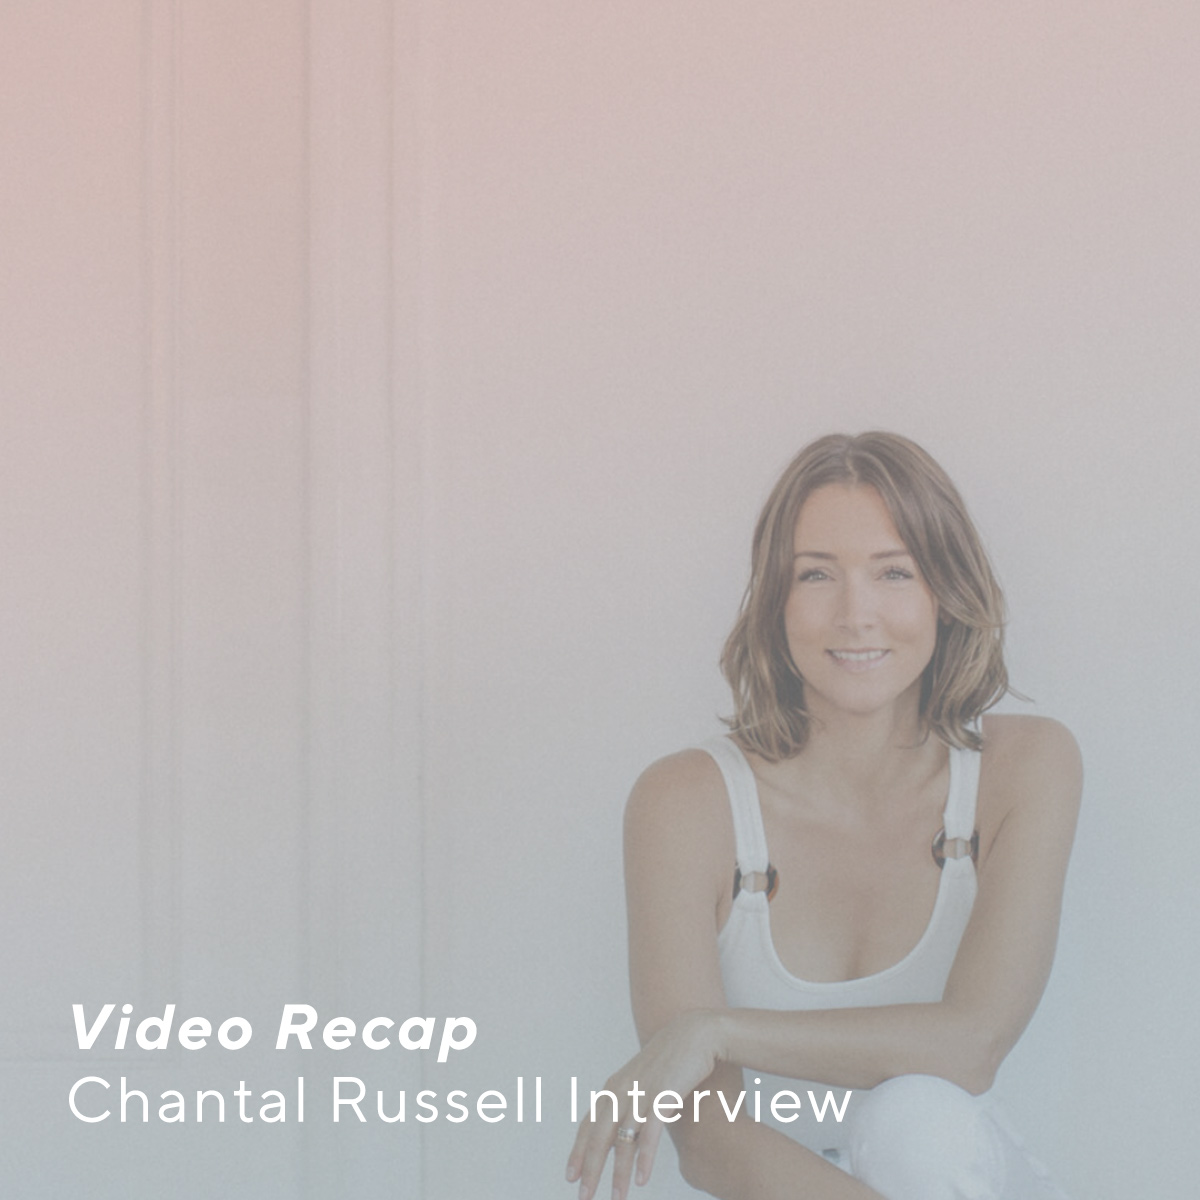 Video recap of Chantal Russell interview